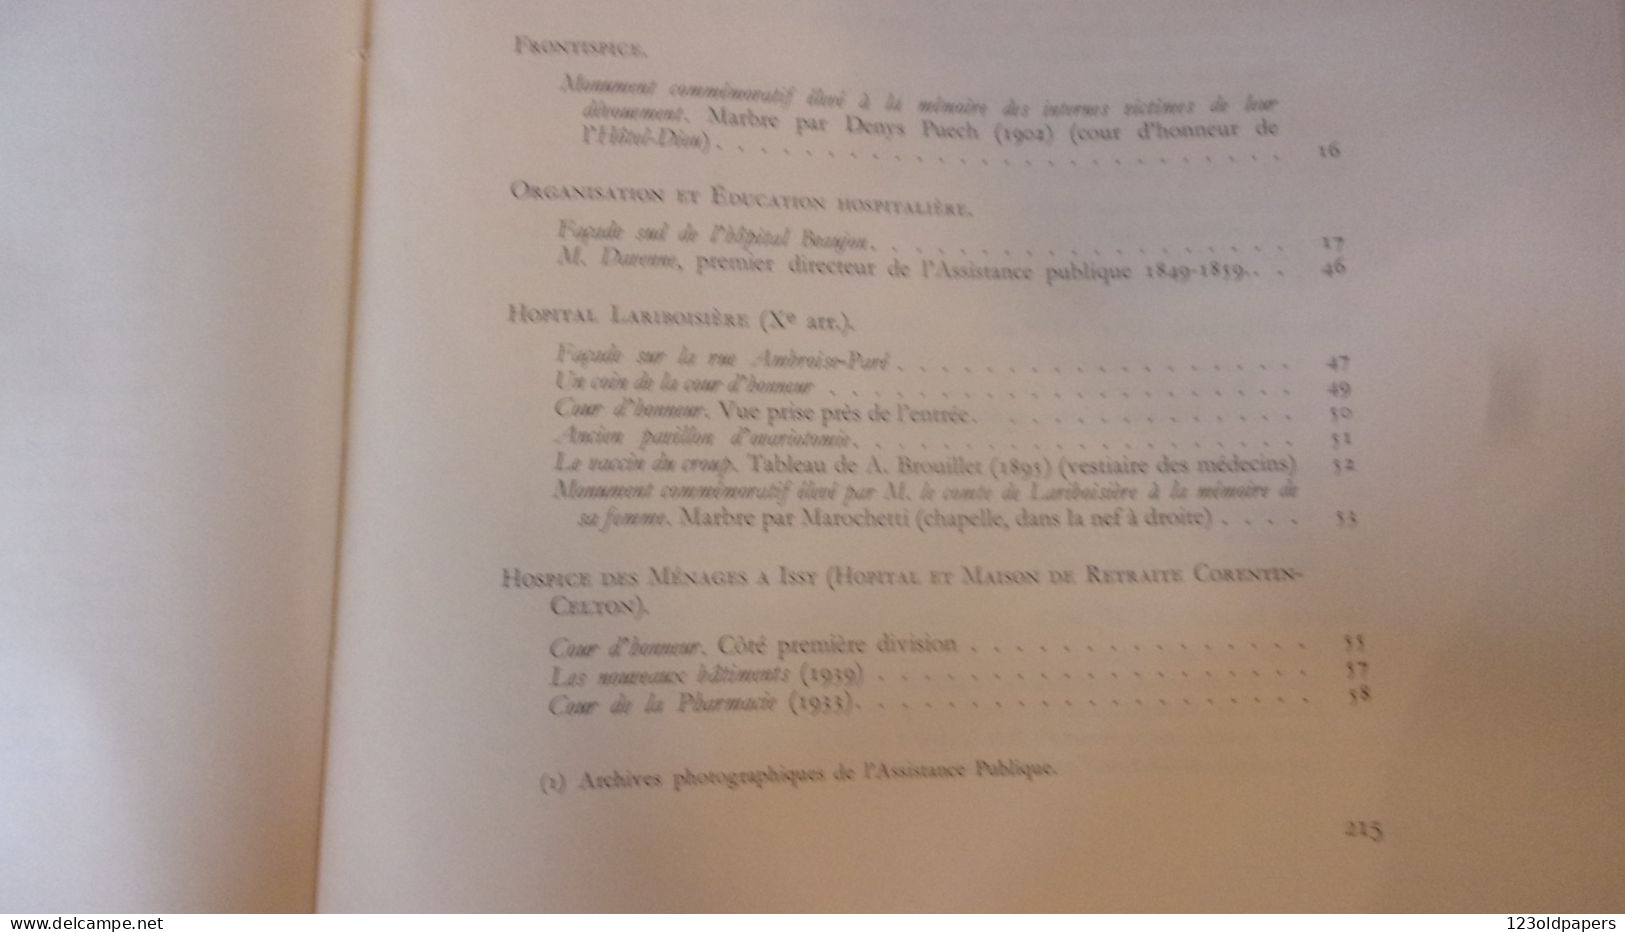 VALLERY RADOT UN SIECLE D HISTOIRE HOSPITALIERE NOS HOPITAUX PARISIENS 1948 EDIT PAUL DUPONT